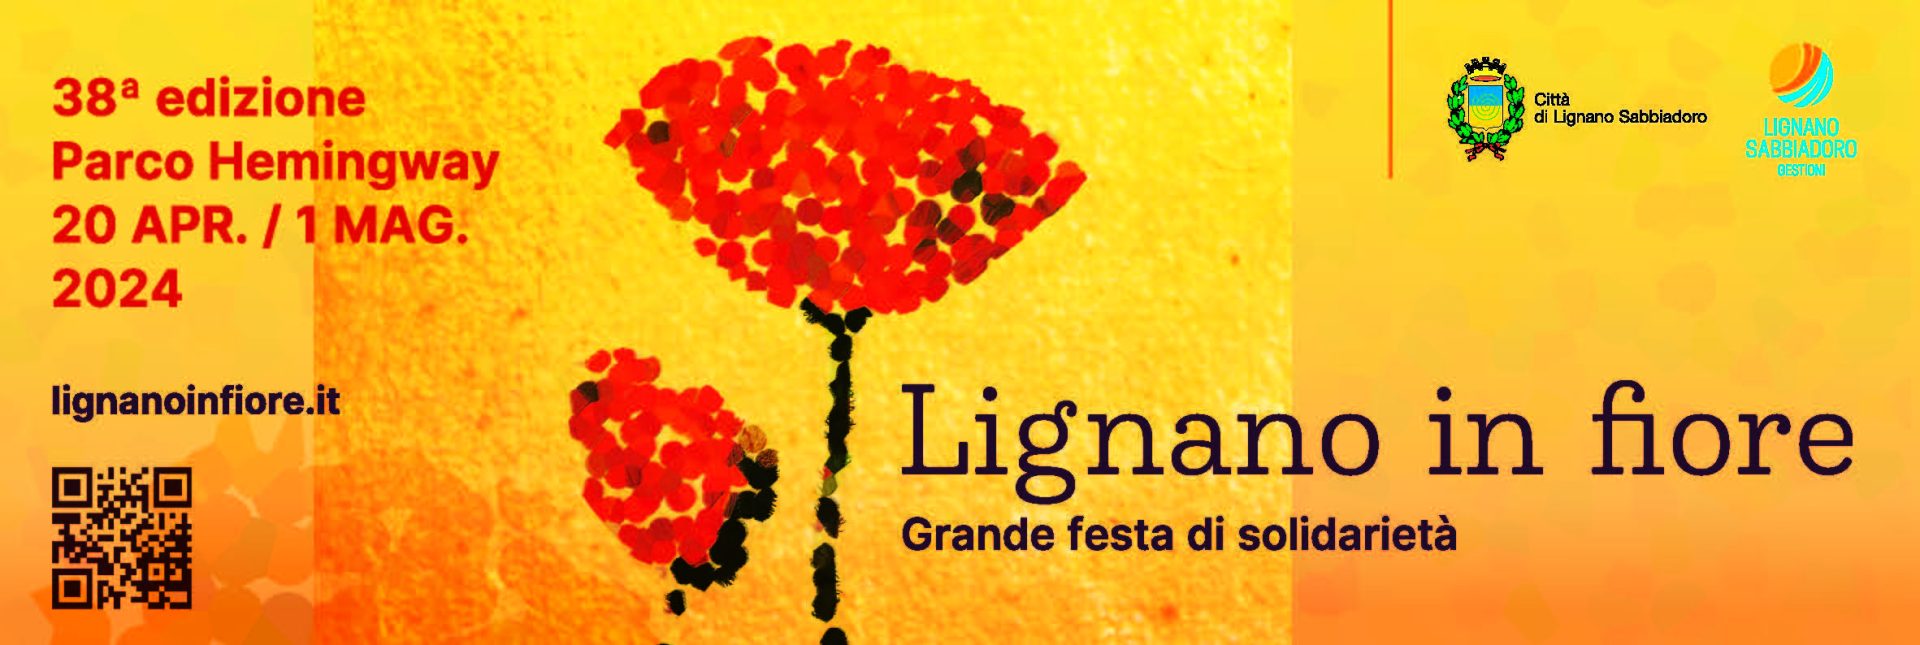 Lignano in Fiore 20/04 – 01/05/2024